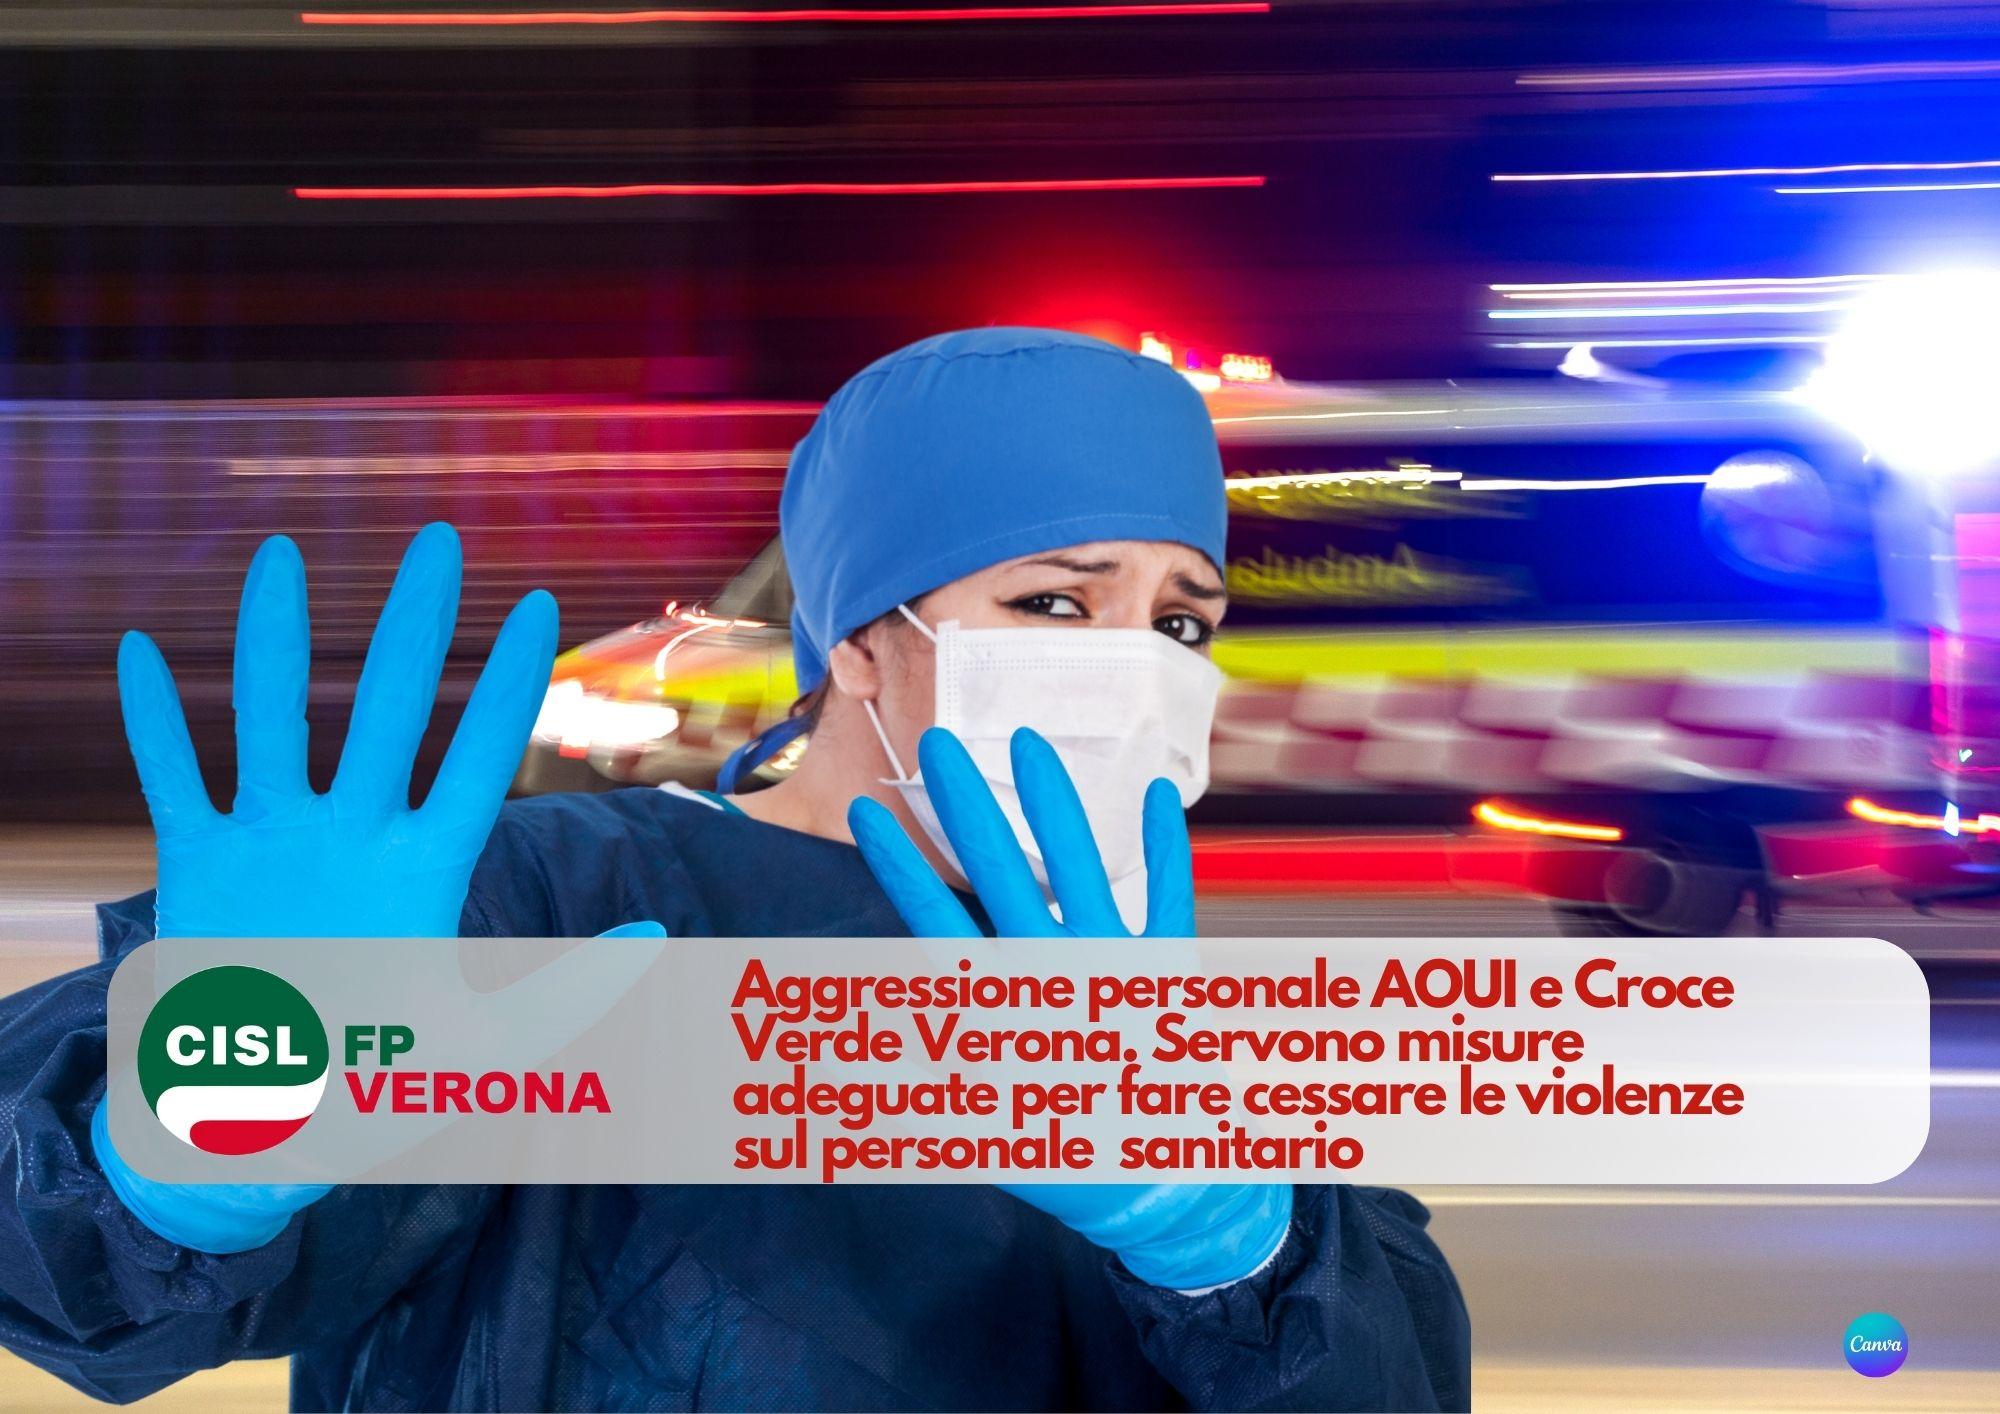 CISL FP Verona. Aggressione personale AOUI e Croce Verde. Servono misure adeguate.